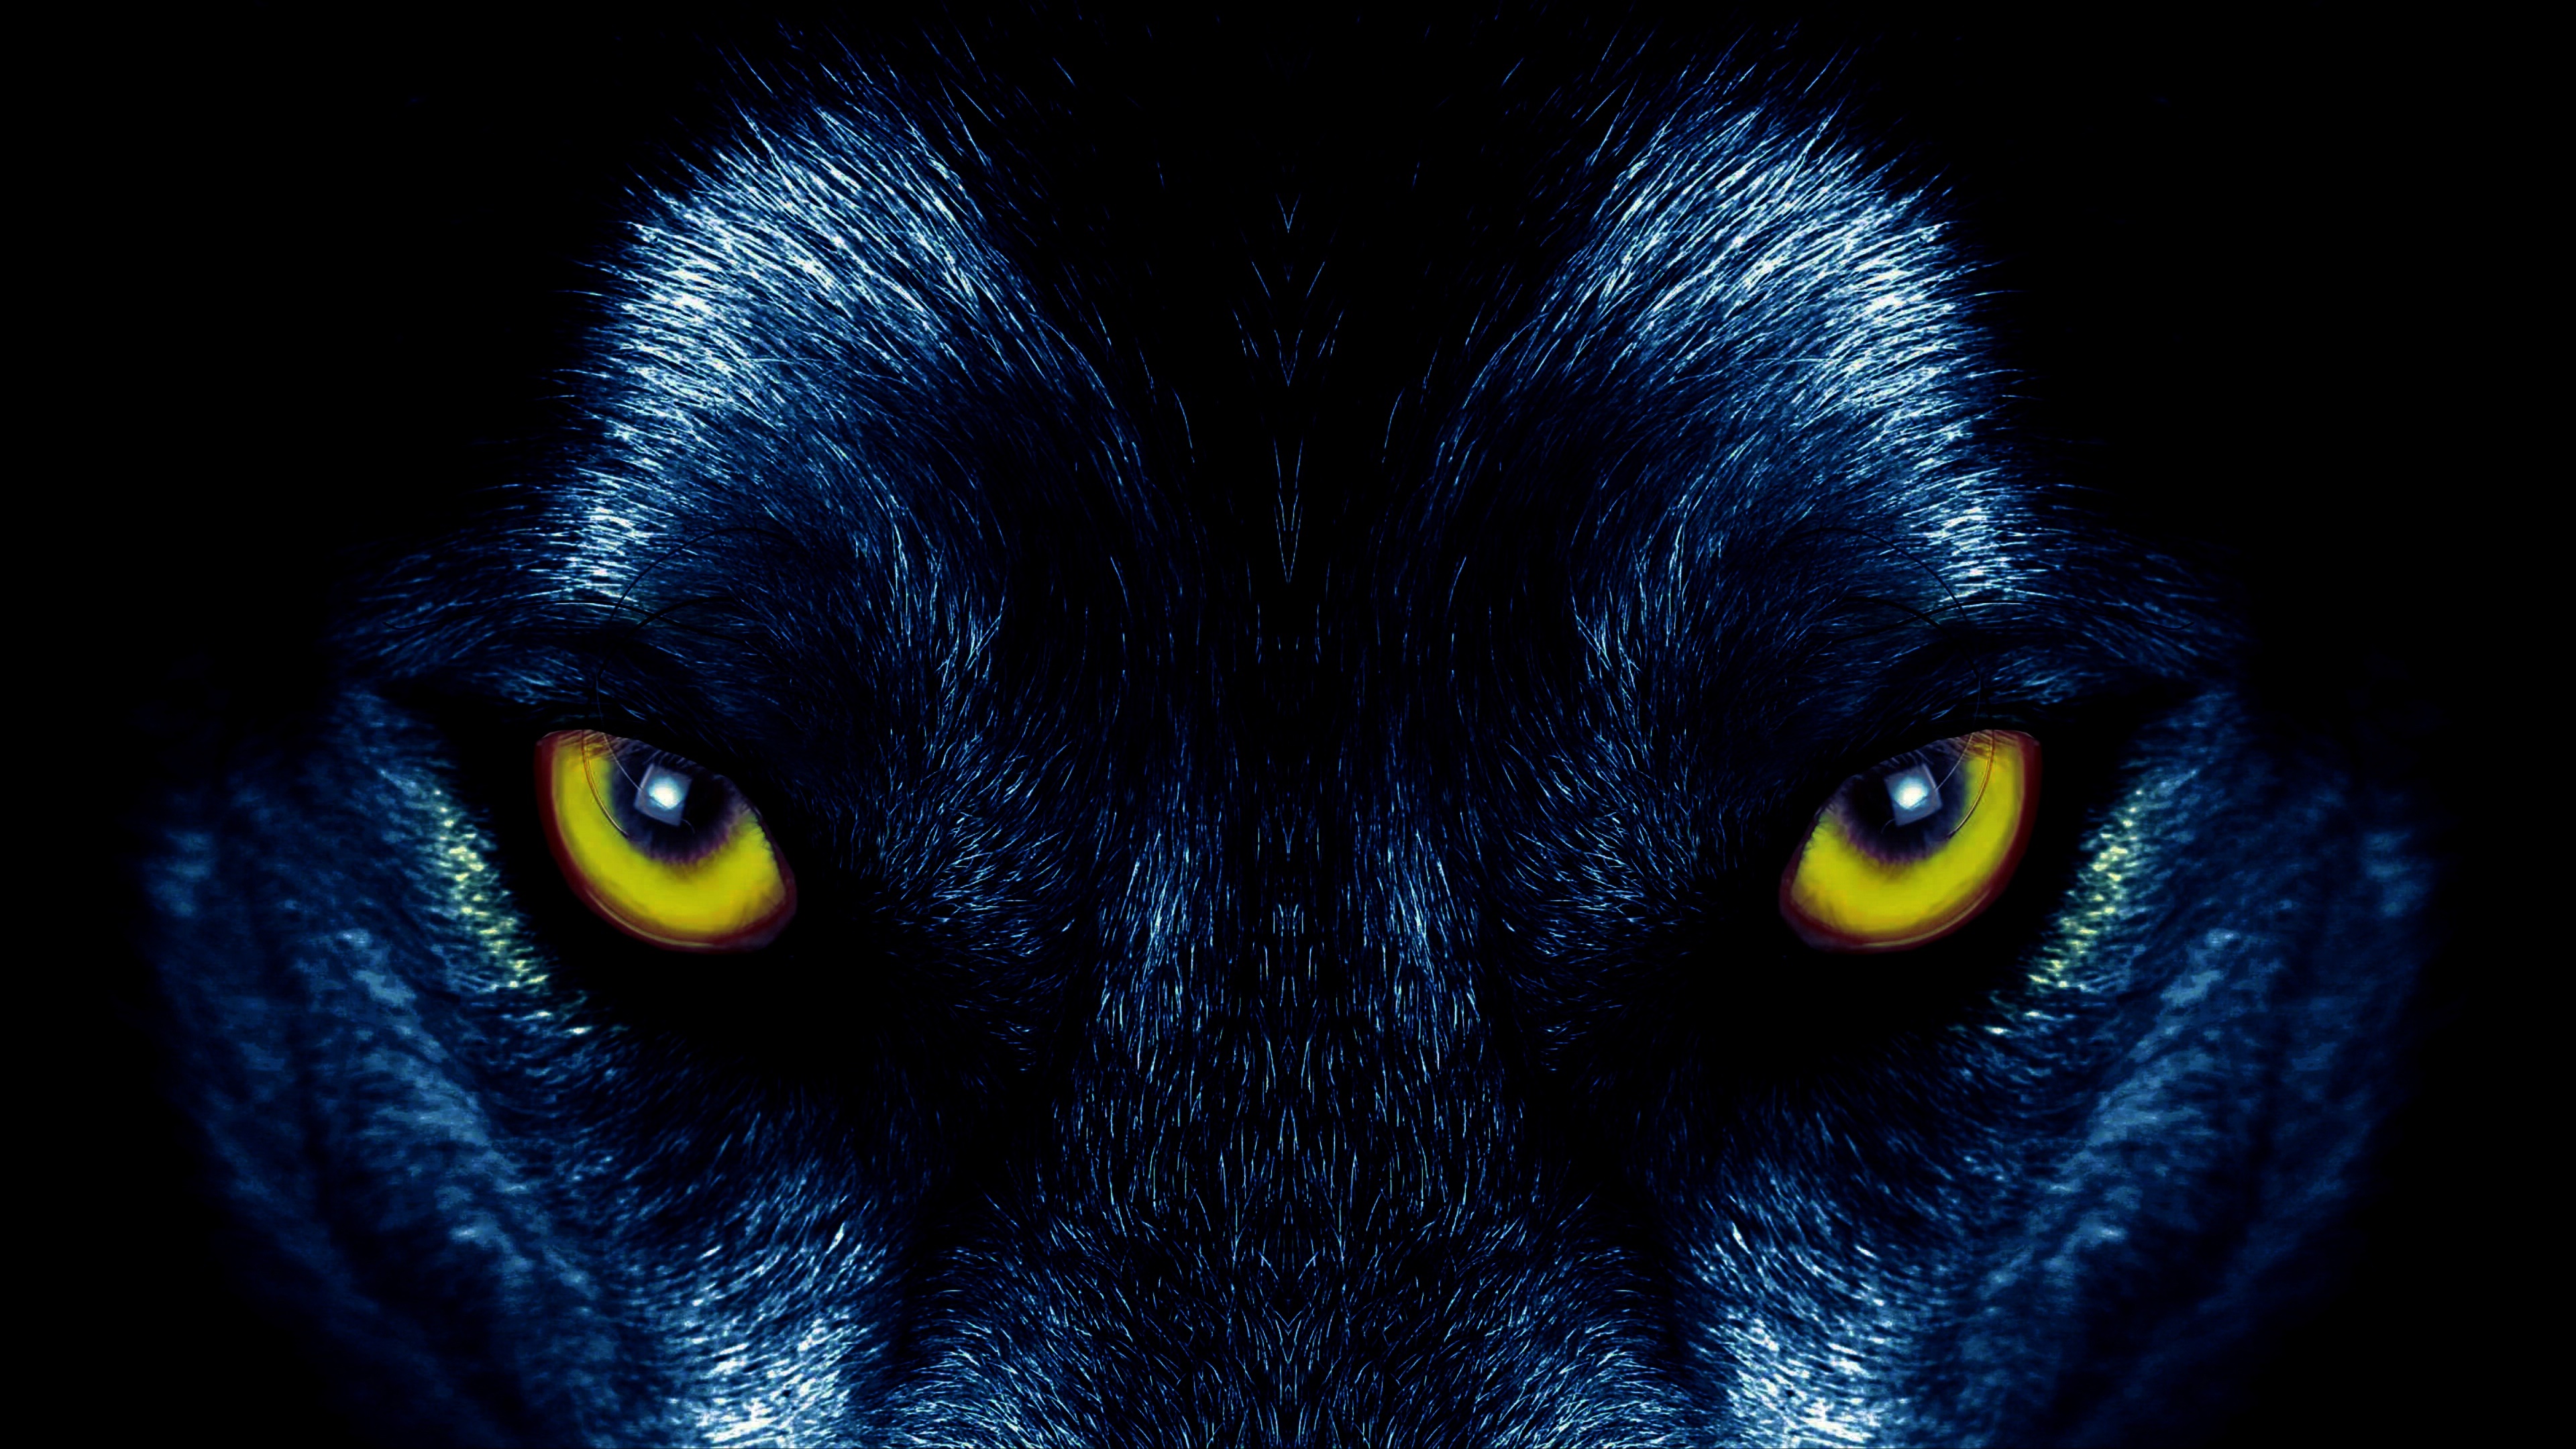 Обои глазки. Глаз волка. Взгляд волка. Волчьи глаза в темноте. Страшный взгляд волка.